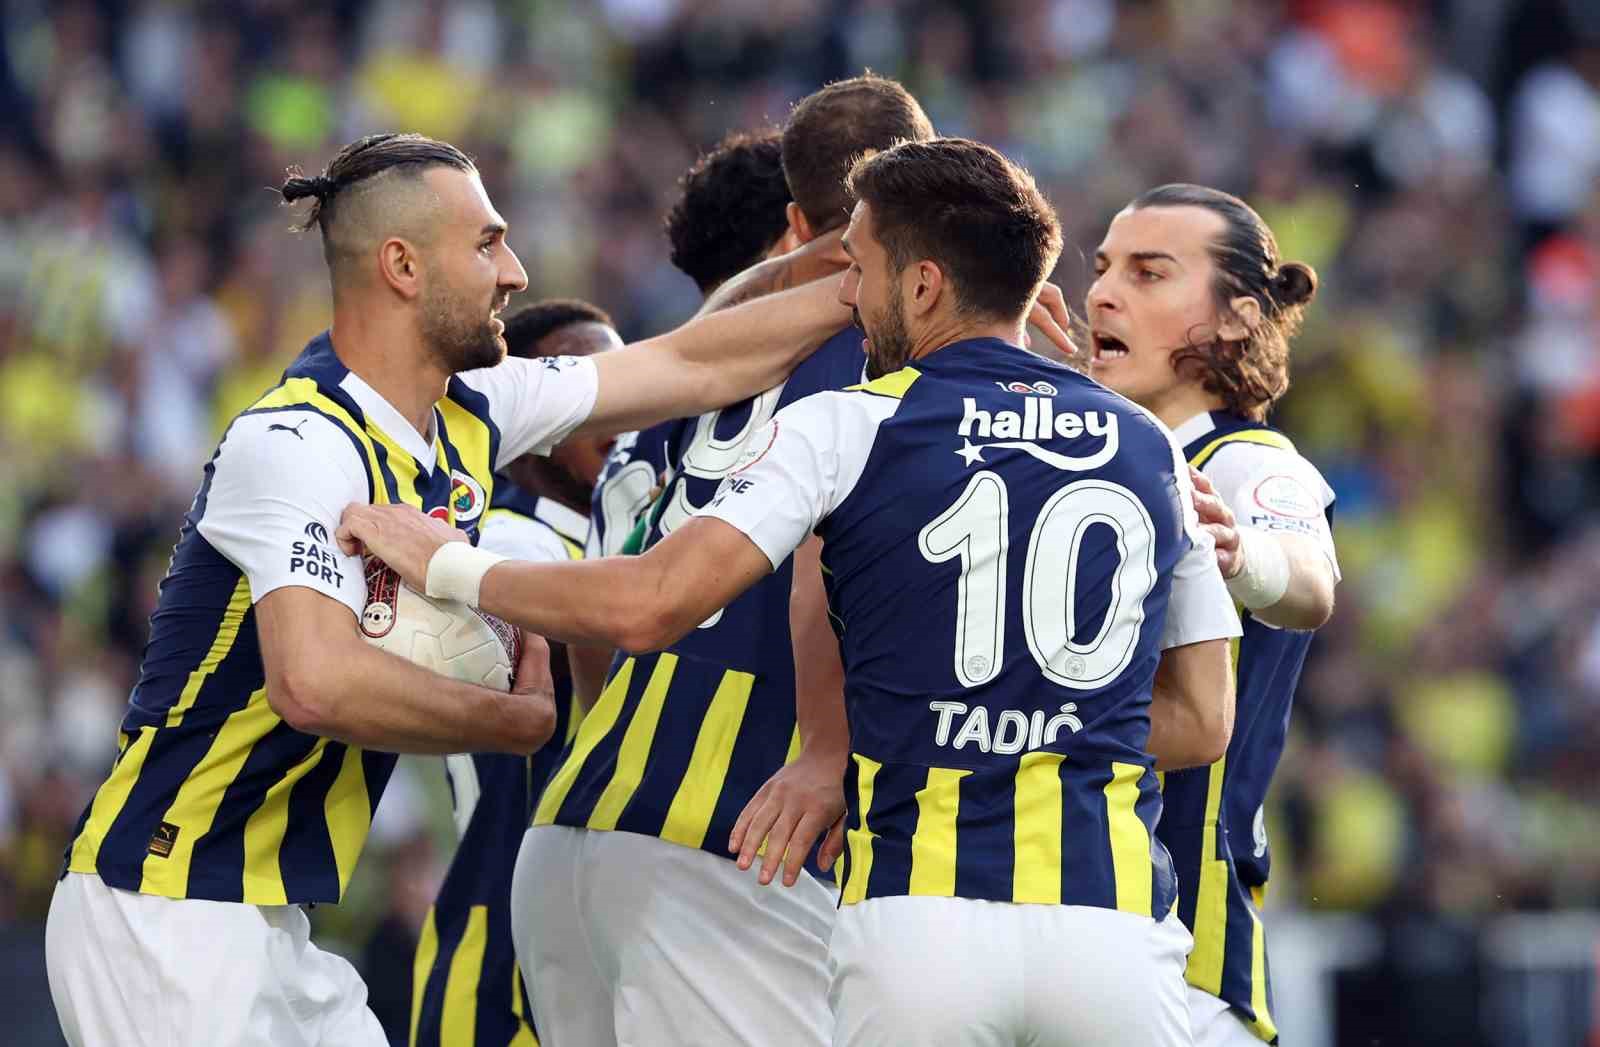 Sarı Kanaryalar, İstanbulspor’u Devirip Sezonu Zafere Taçlandırdı